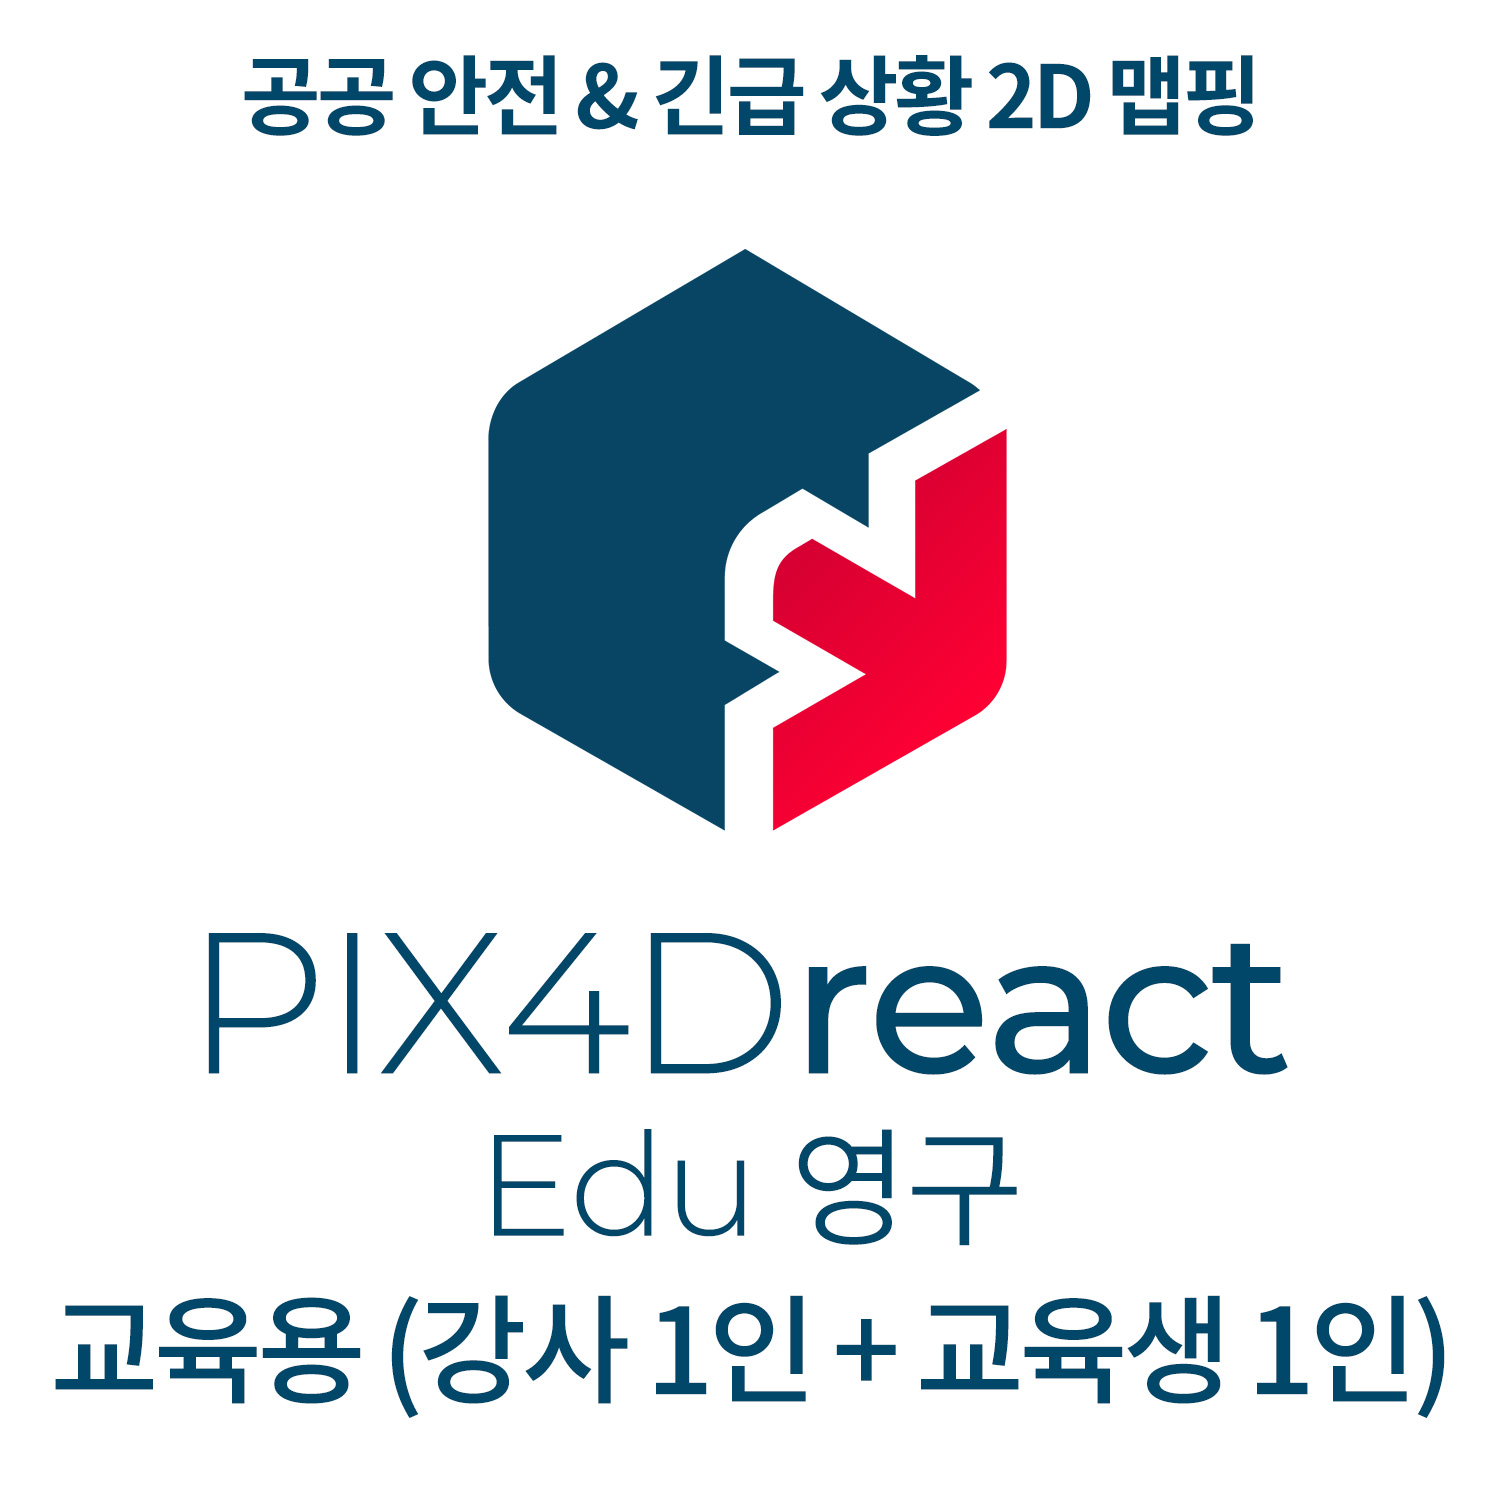 PIX4Dreact EDU교육기관-학교(강사 1인 + 교육생 1인)(영구소유) 헬셀